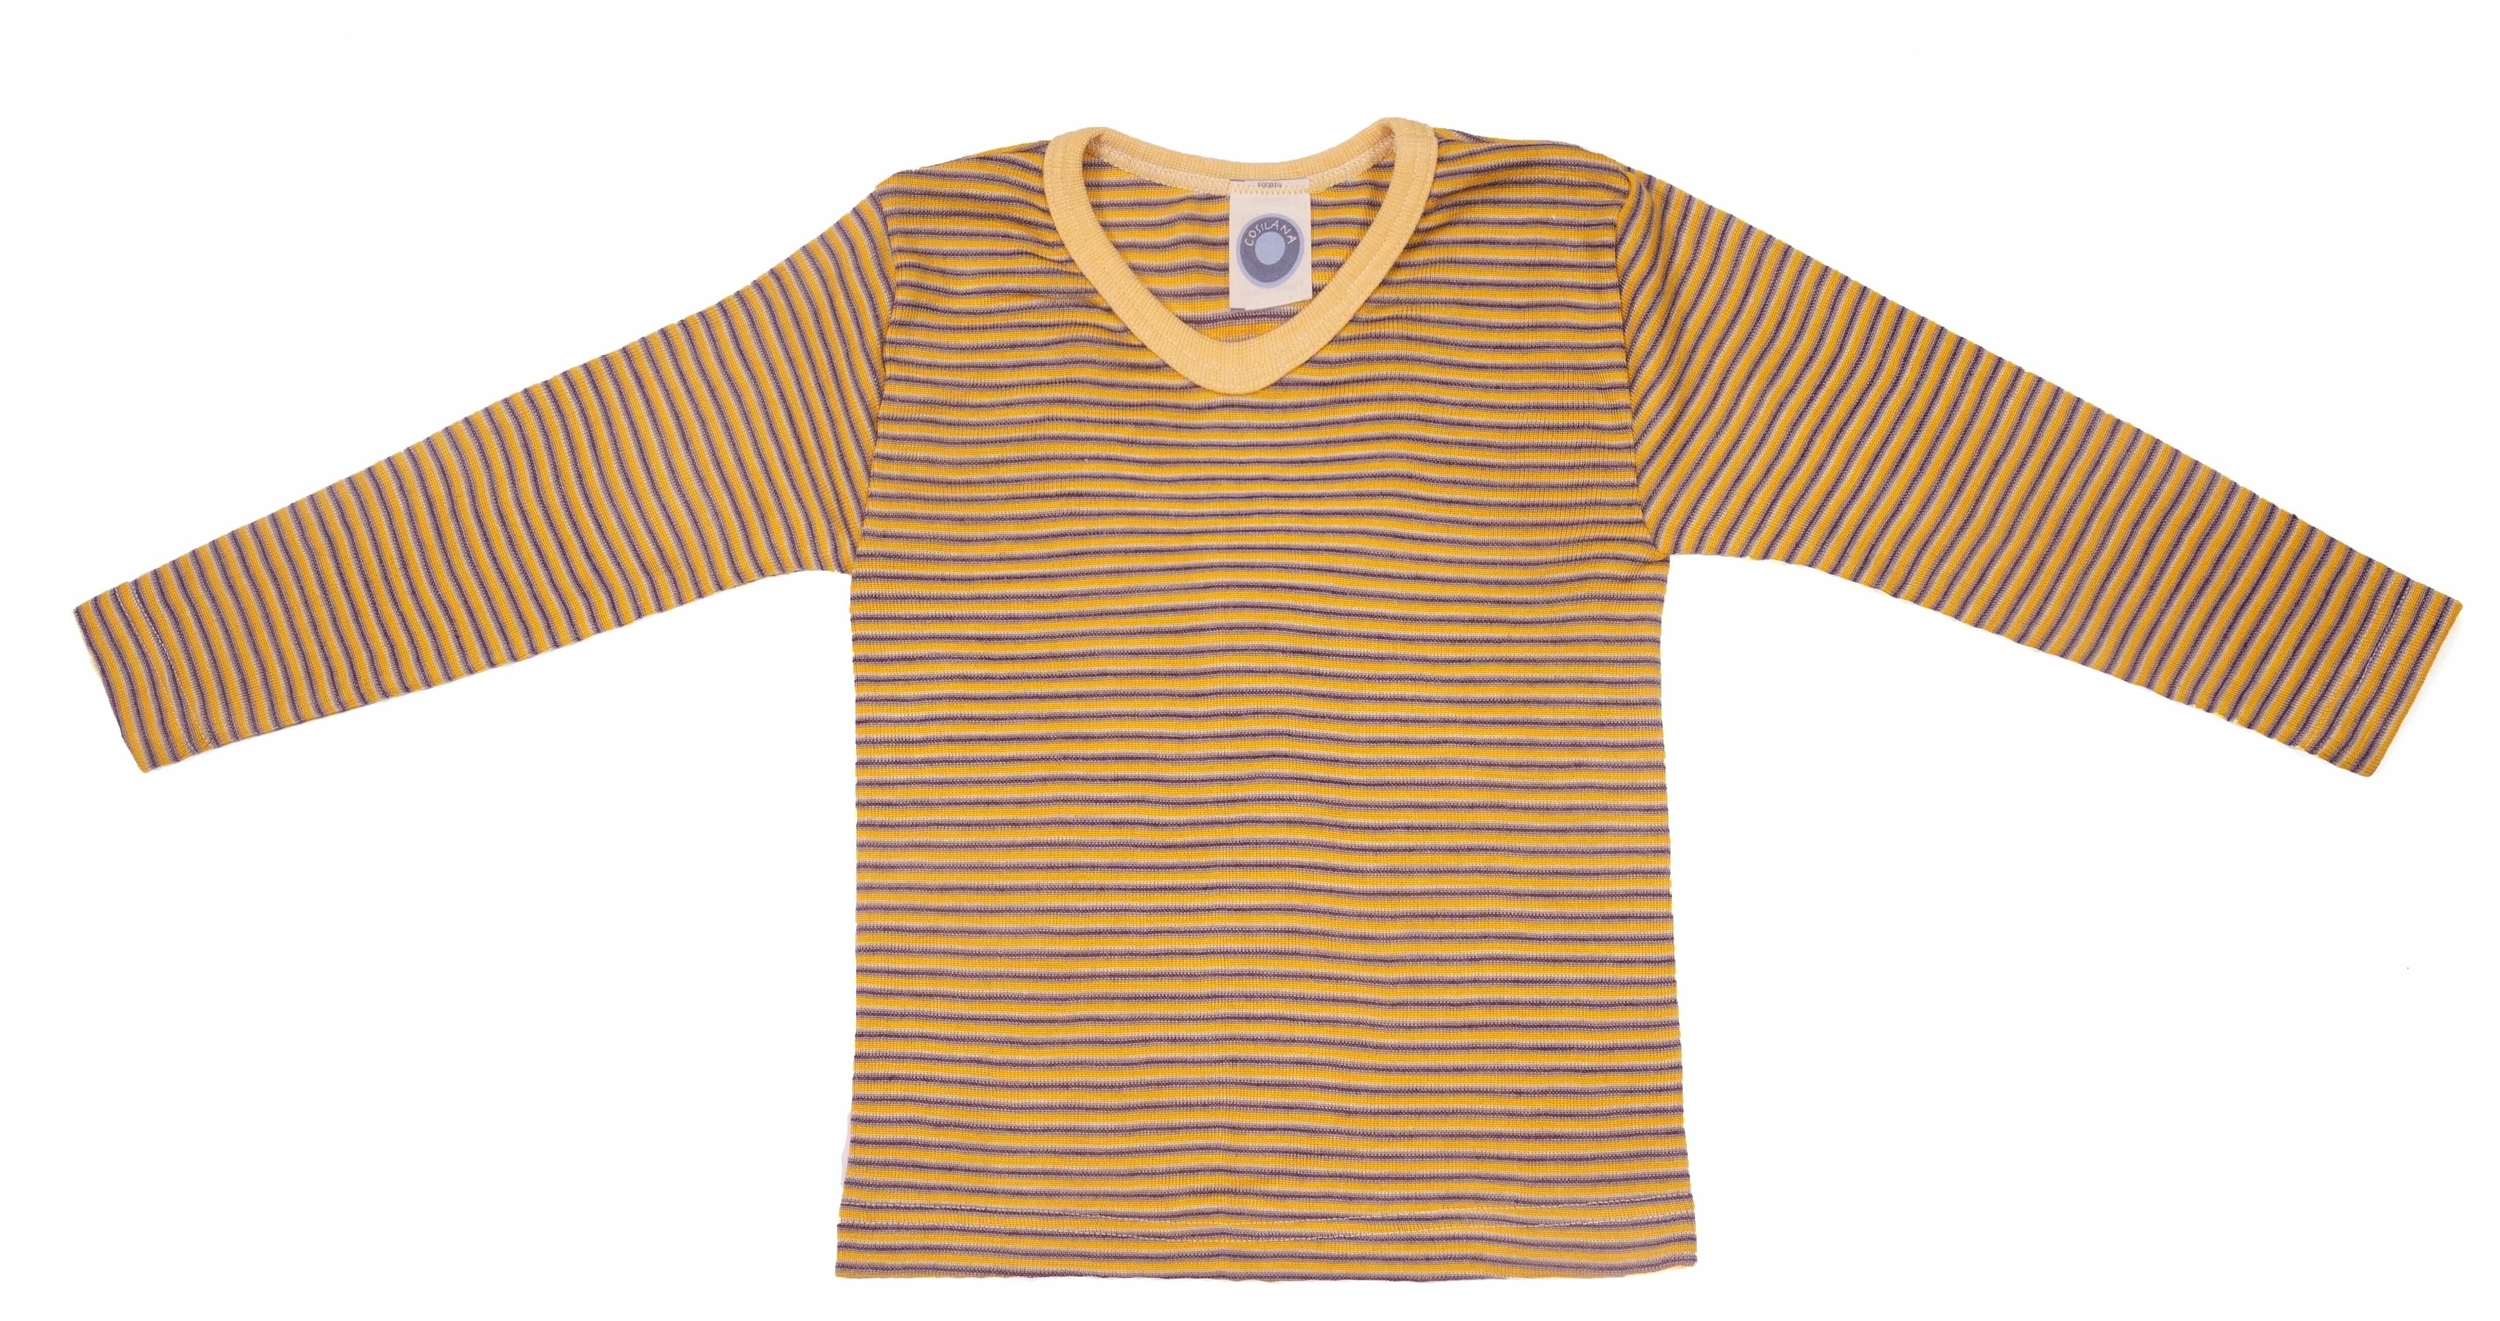 Cosilana T-shirt manches longues enfants Laine/soie jaune/prune/naturel rayé-71233-224